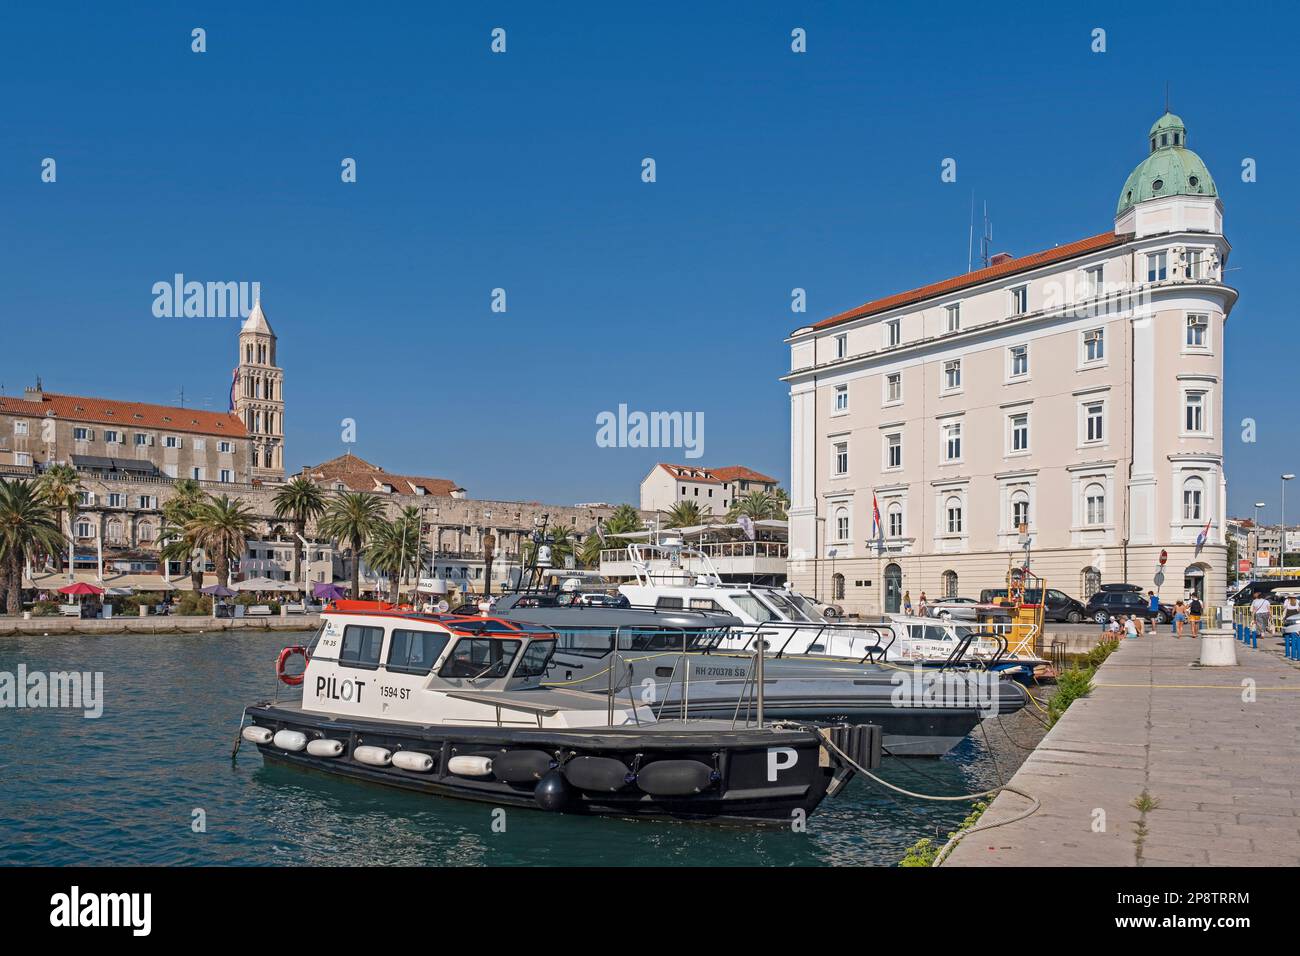 Pilot boat docked in the port of the city Split, Split-Dalmatia County, Croatia Stock Photo